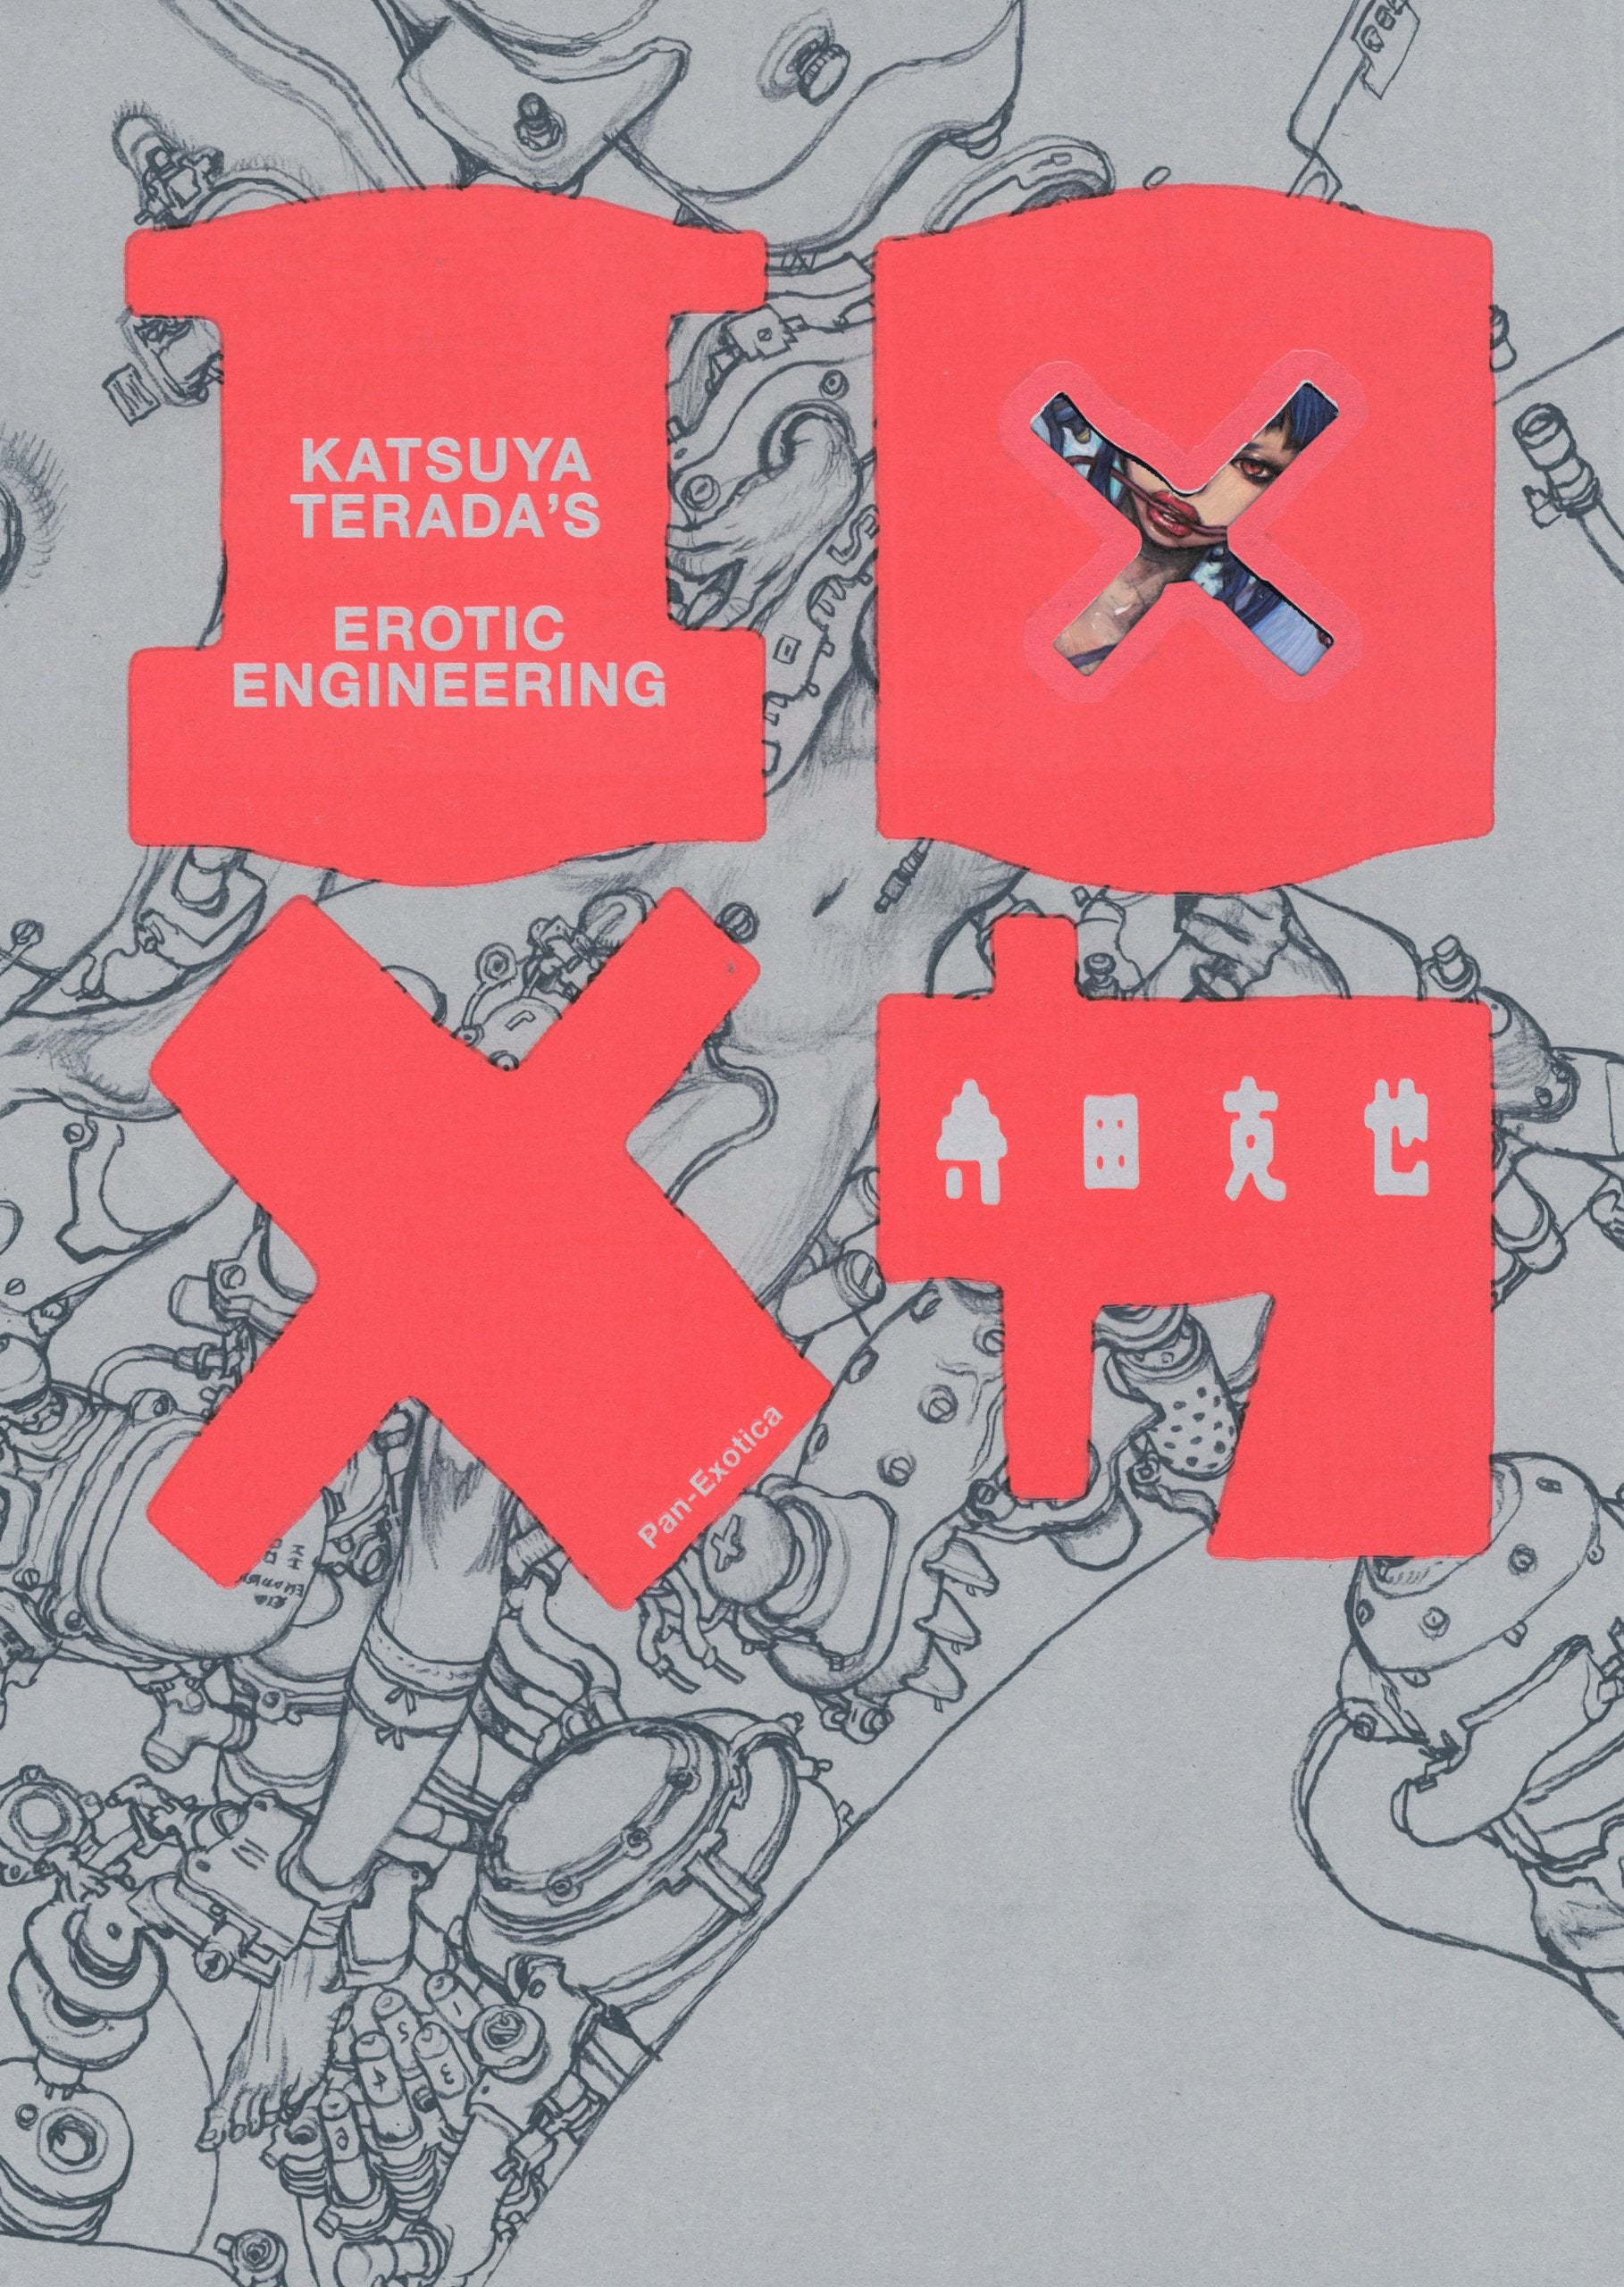 Katsuya Terada "Erotic Engineering"